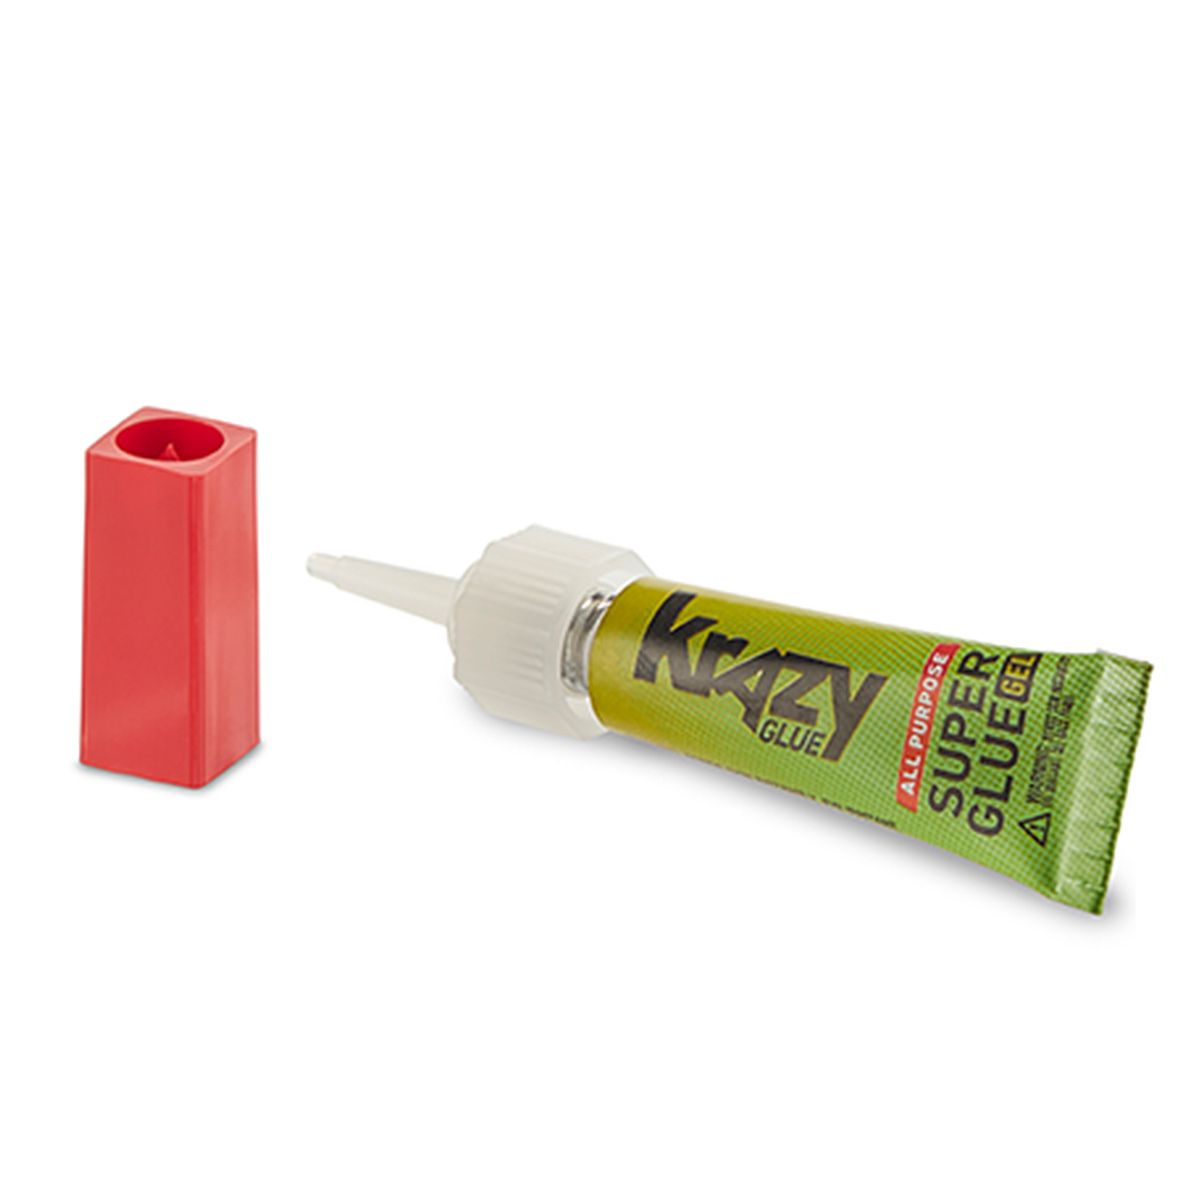 2gram Krazy Glue - Orgill Paint & Sundries - AW Graham Lumber KY